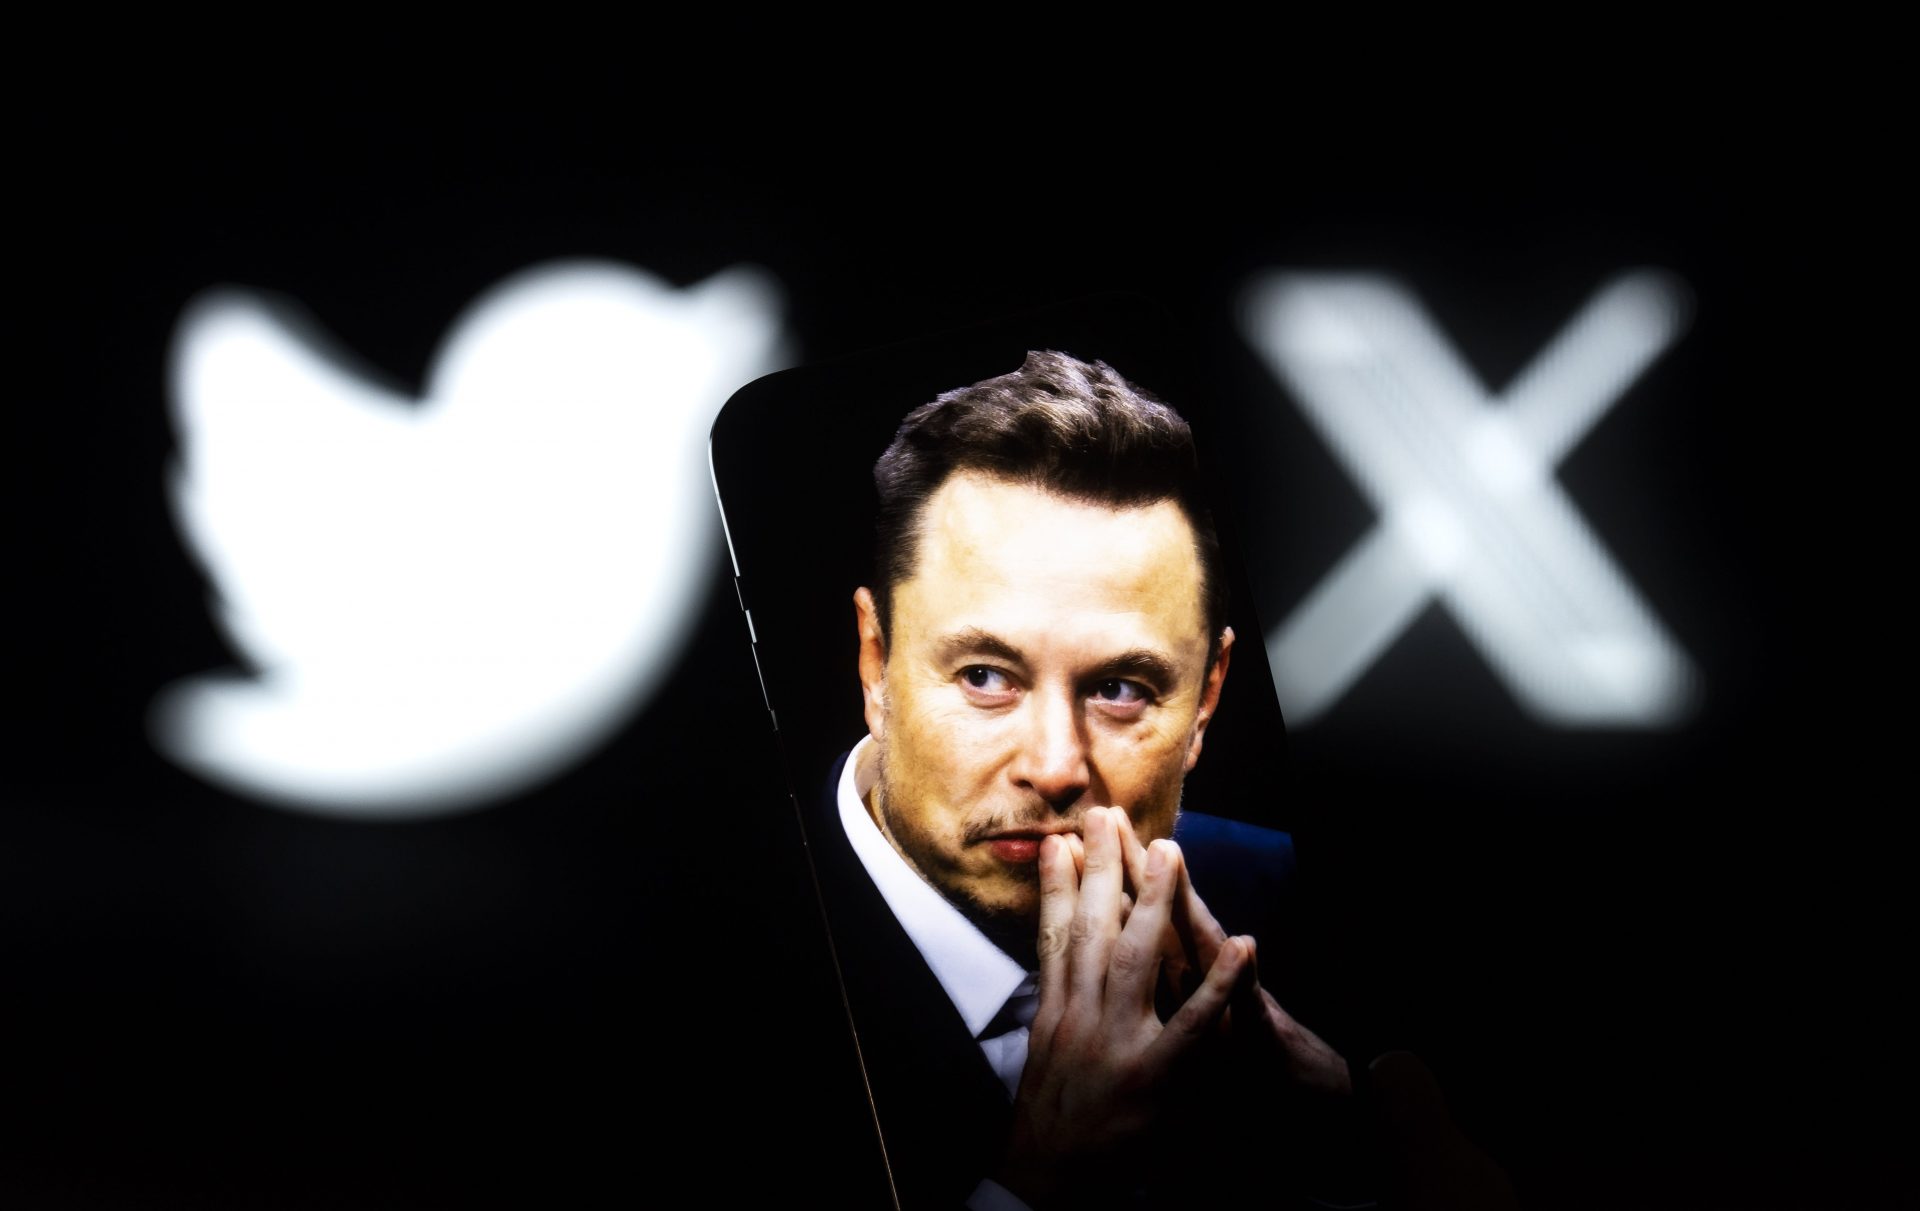 Un fost șef de la Twitter acuză compania că l-a concediat pentru a evita reglementările